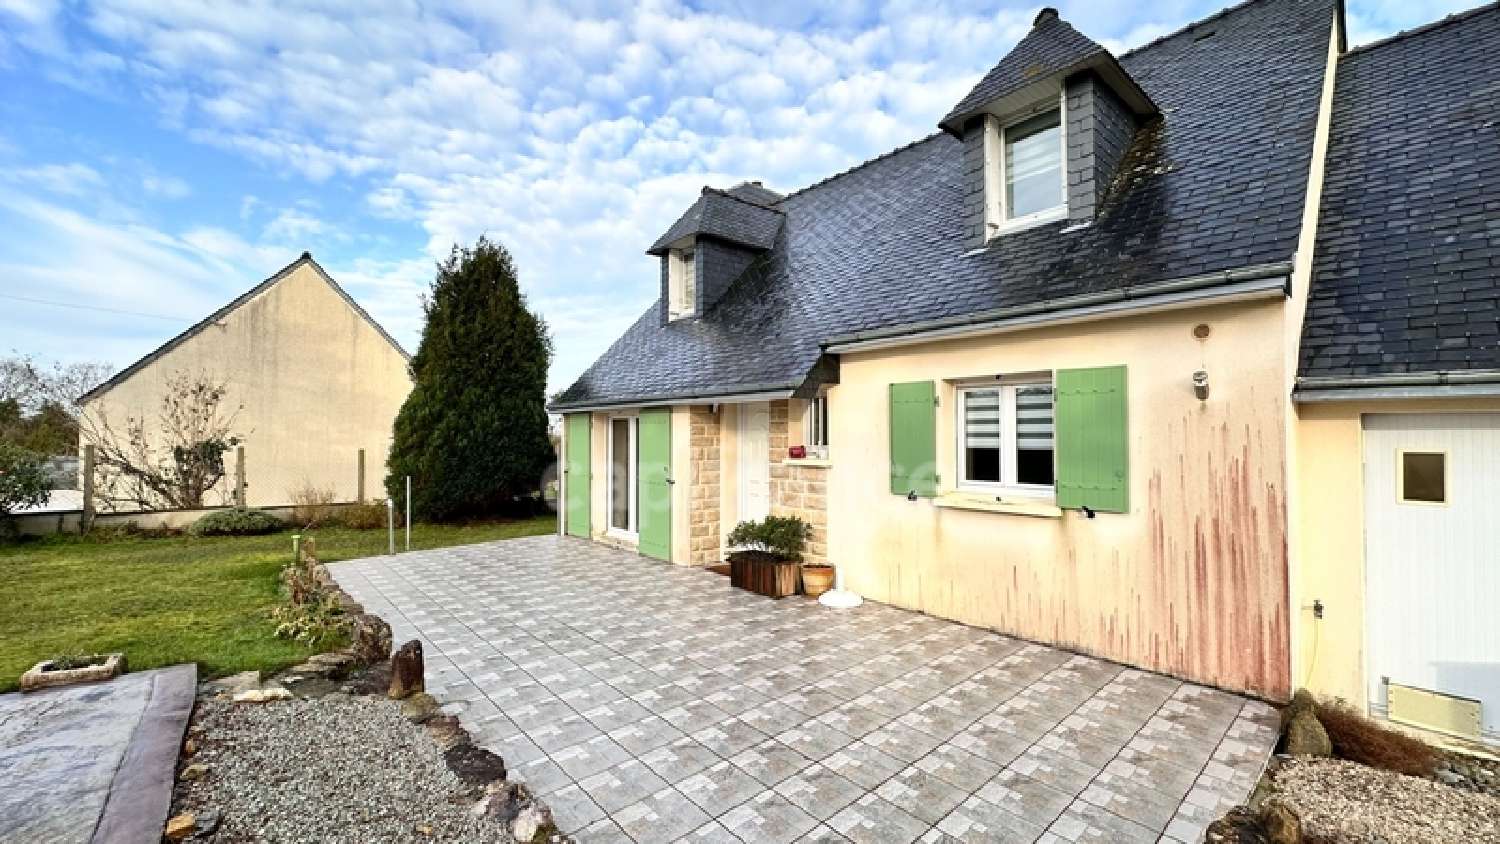  à vendre maison Telgruc-sur-Mer Finistère 3